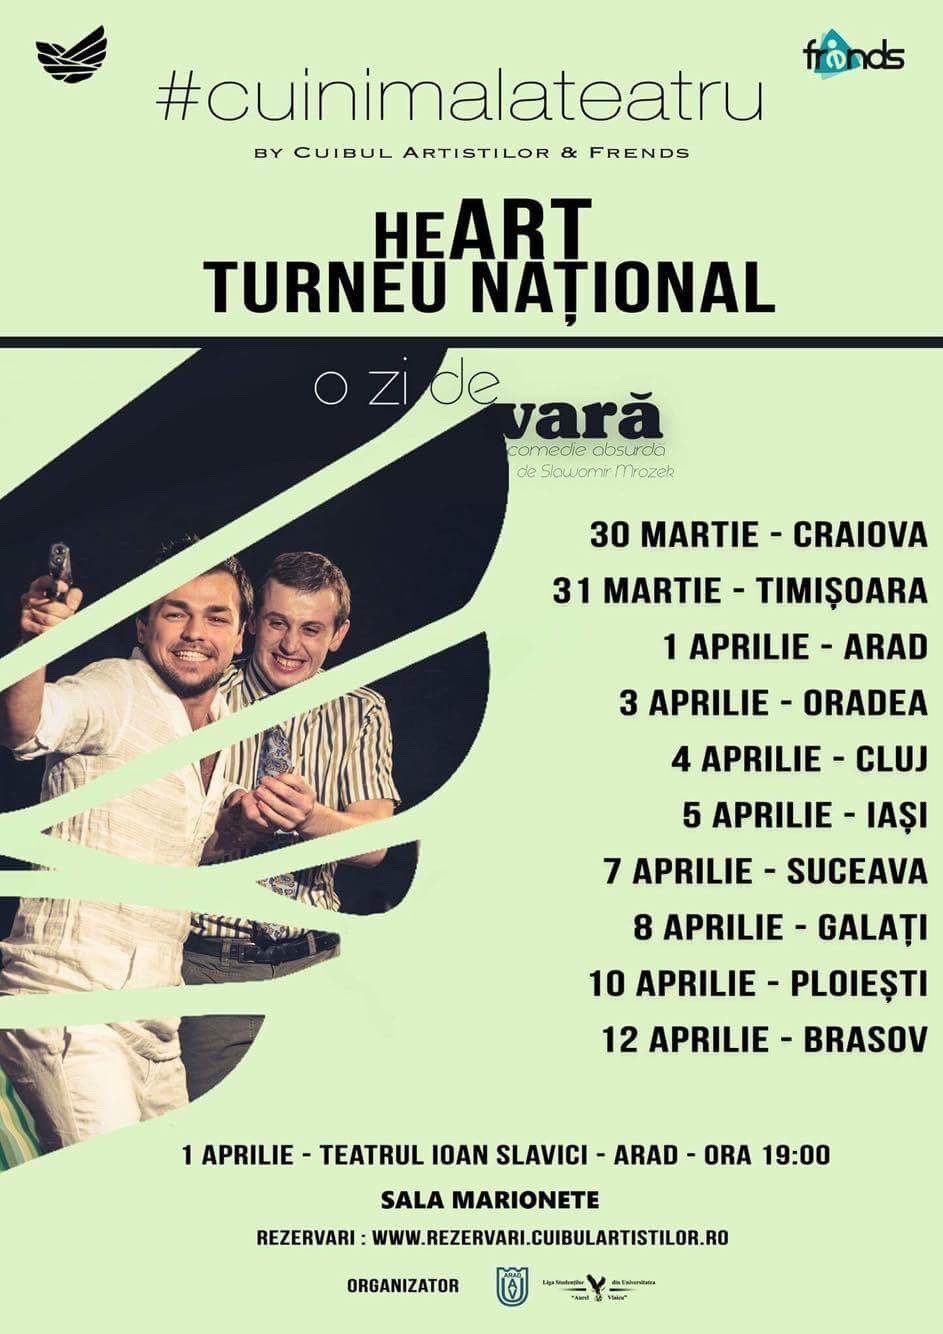 Pe 1 aprilie Cuibul Artistilor ajunge in Arad cu turneul caritabil “heART – cu inima la teatru” in parteneriat cu Liga studentilor din Universitatea Aurel Vlaicu